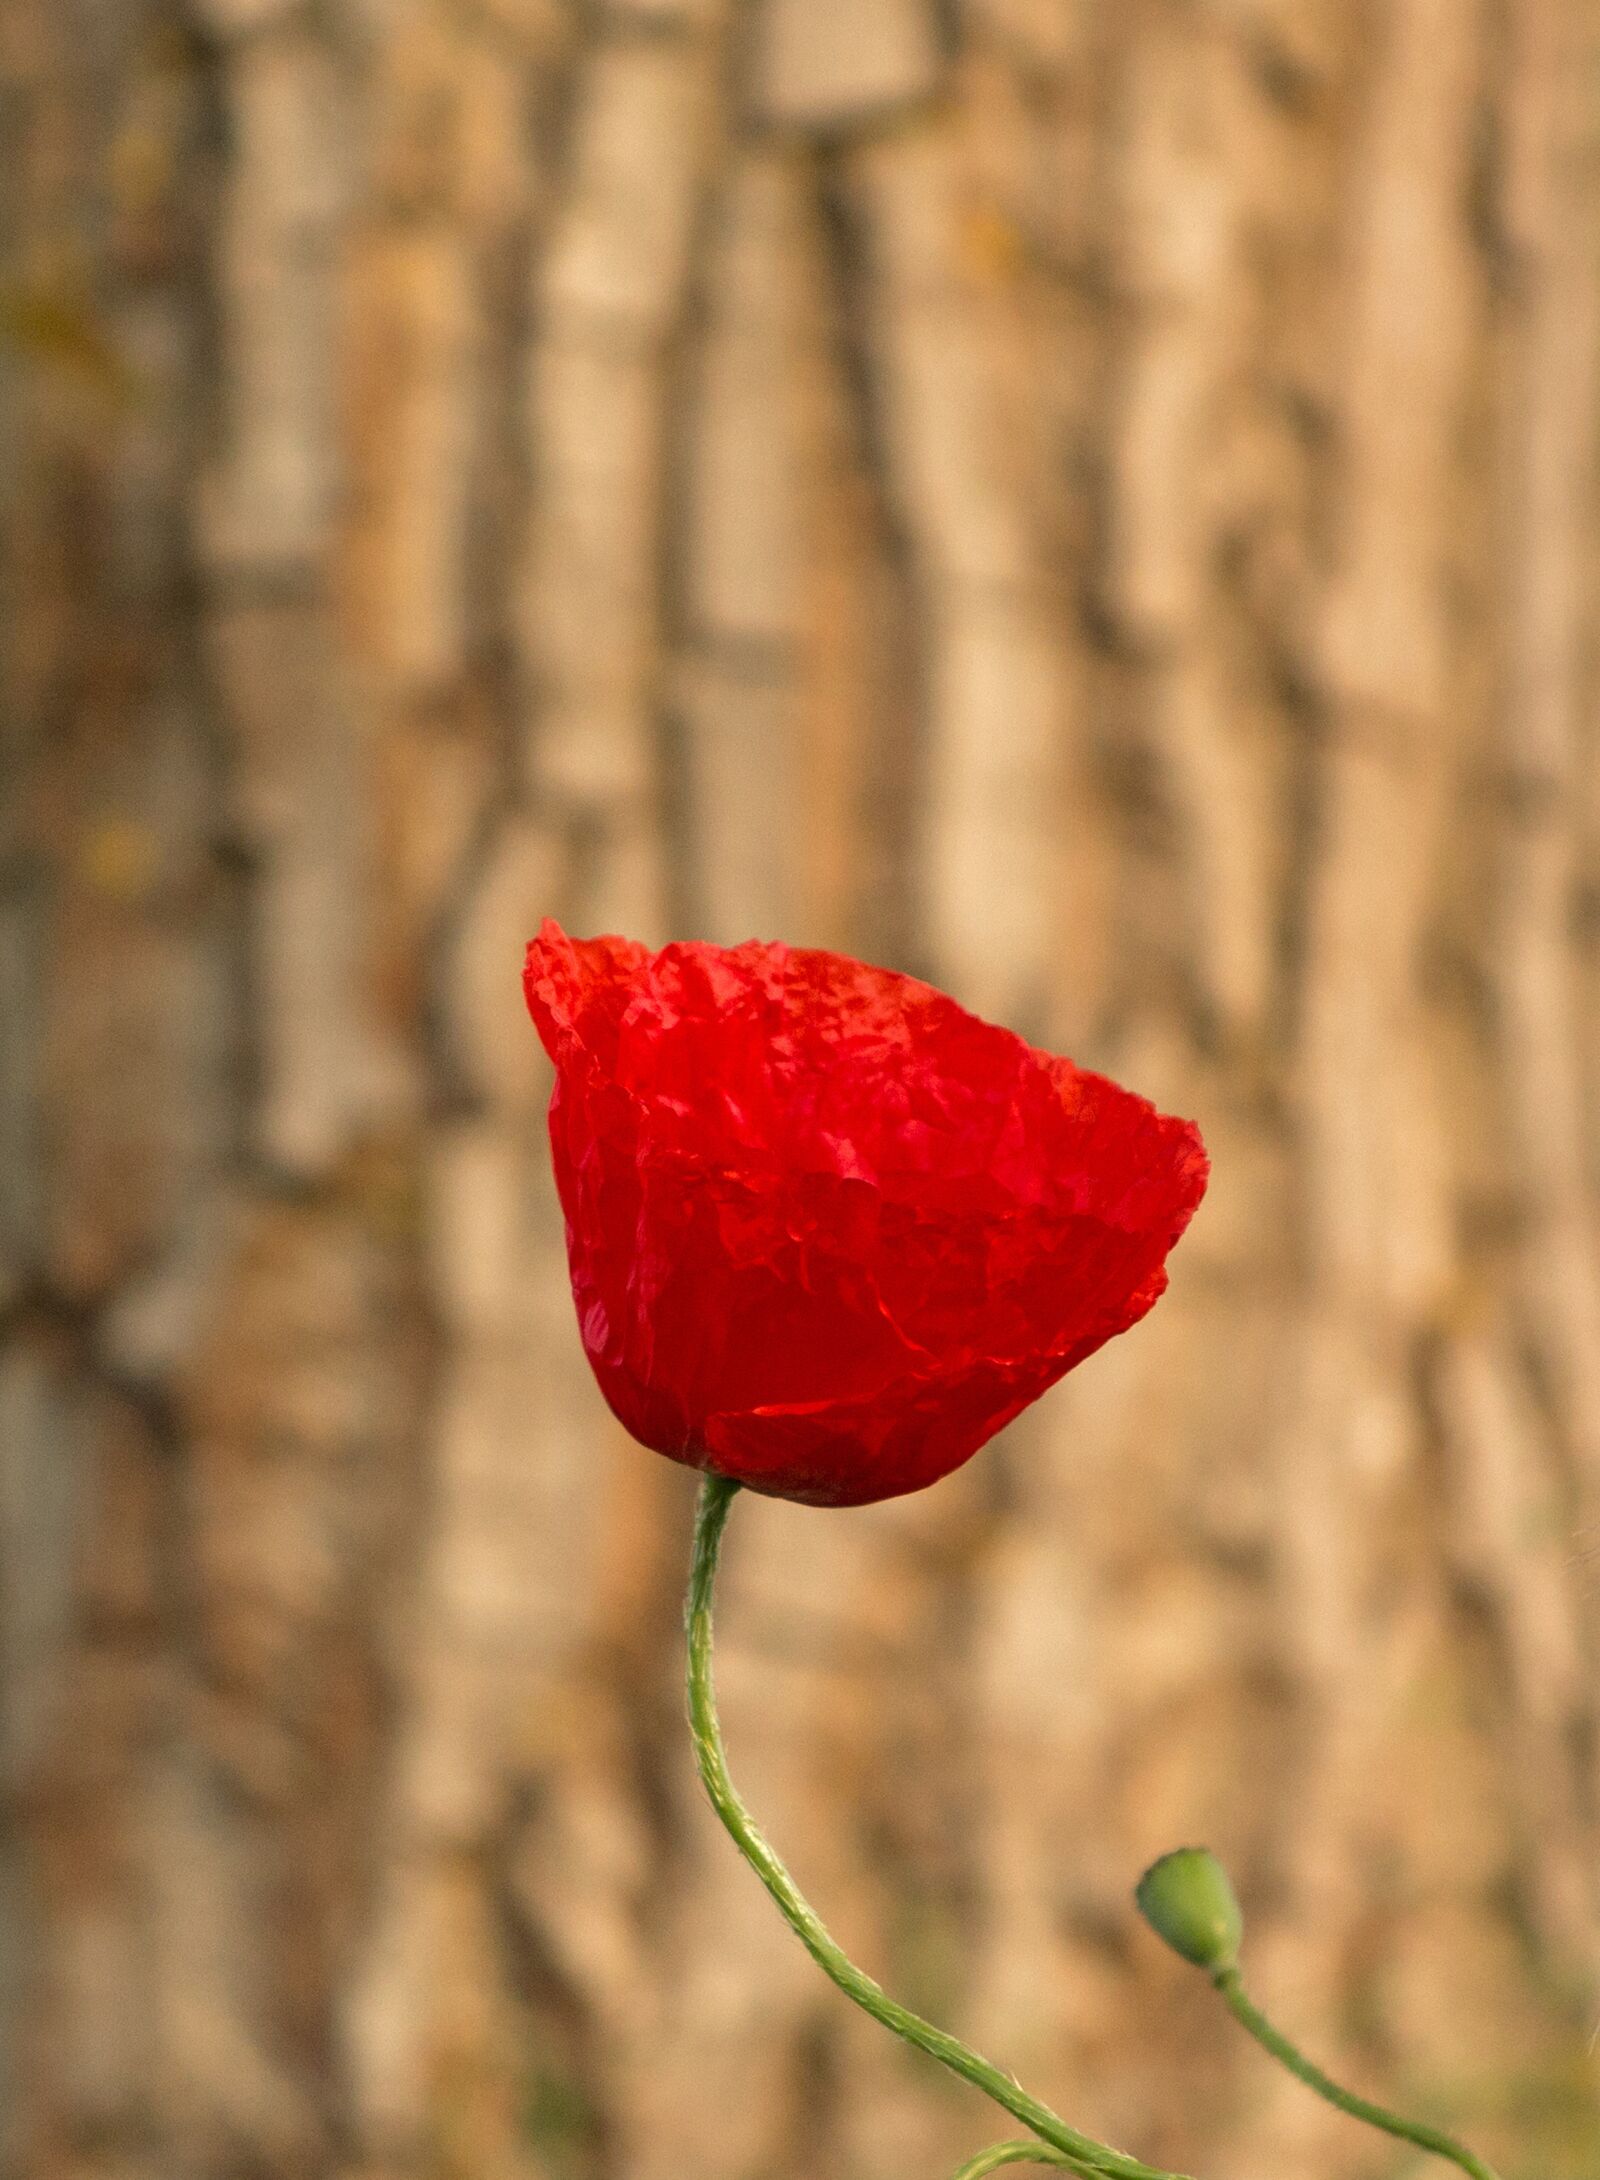 Canon PowerShot G1 X sample photo. Poppy, poppy flower, klatschmohn photography